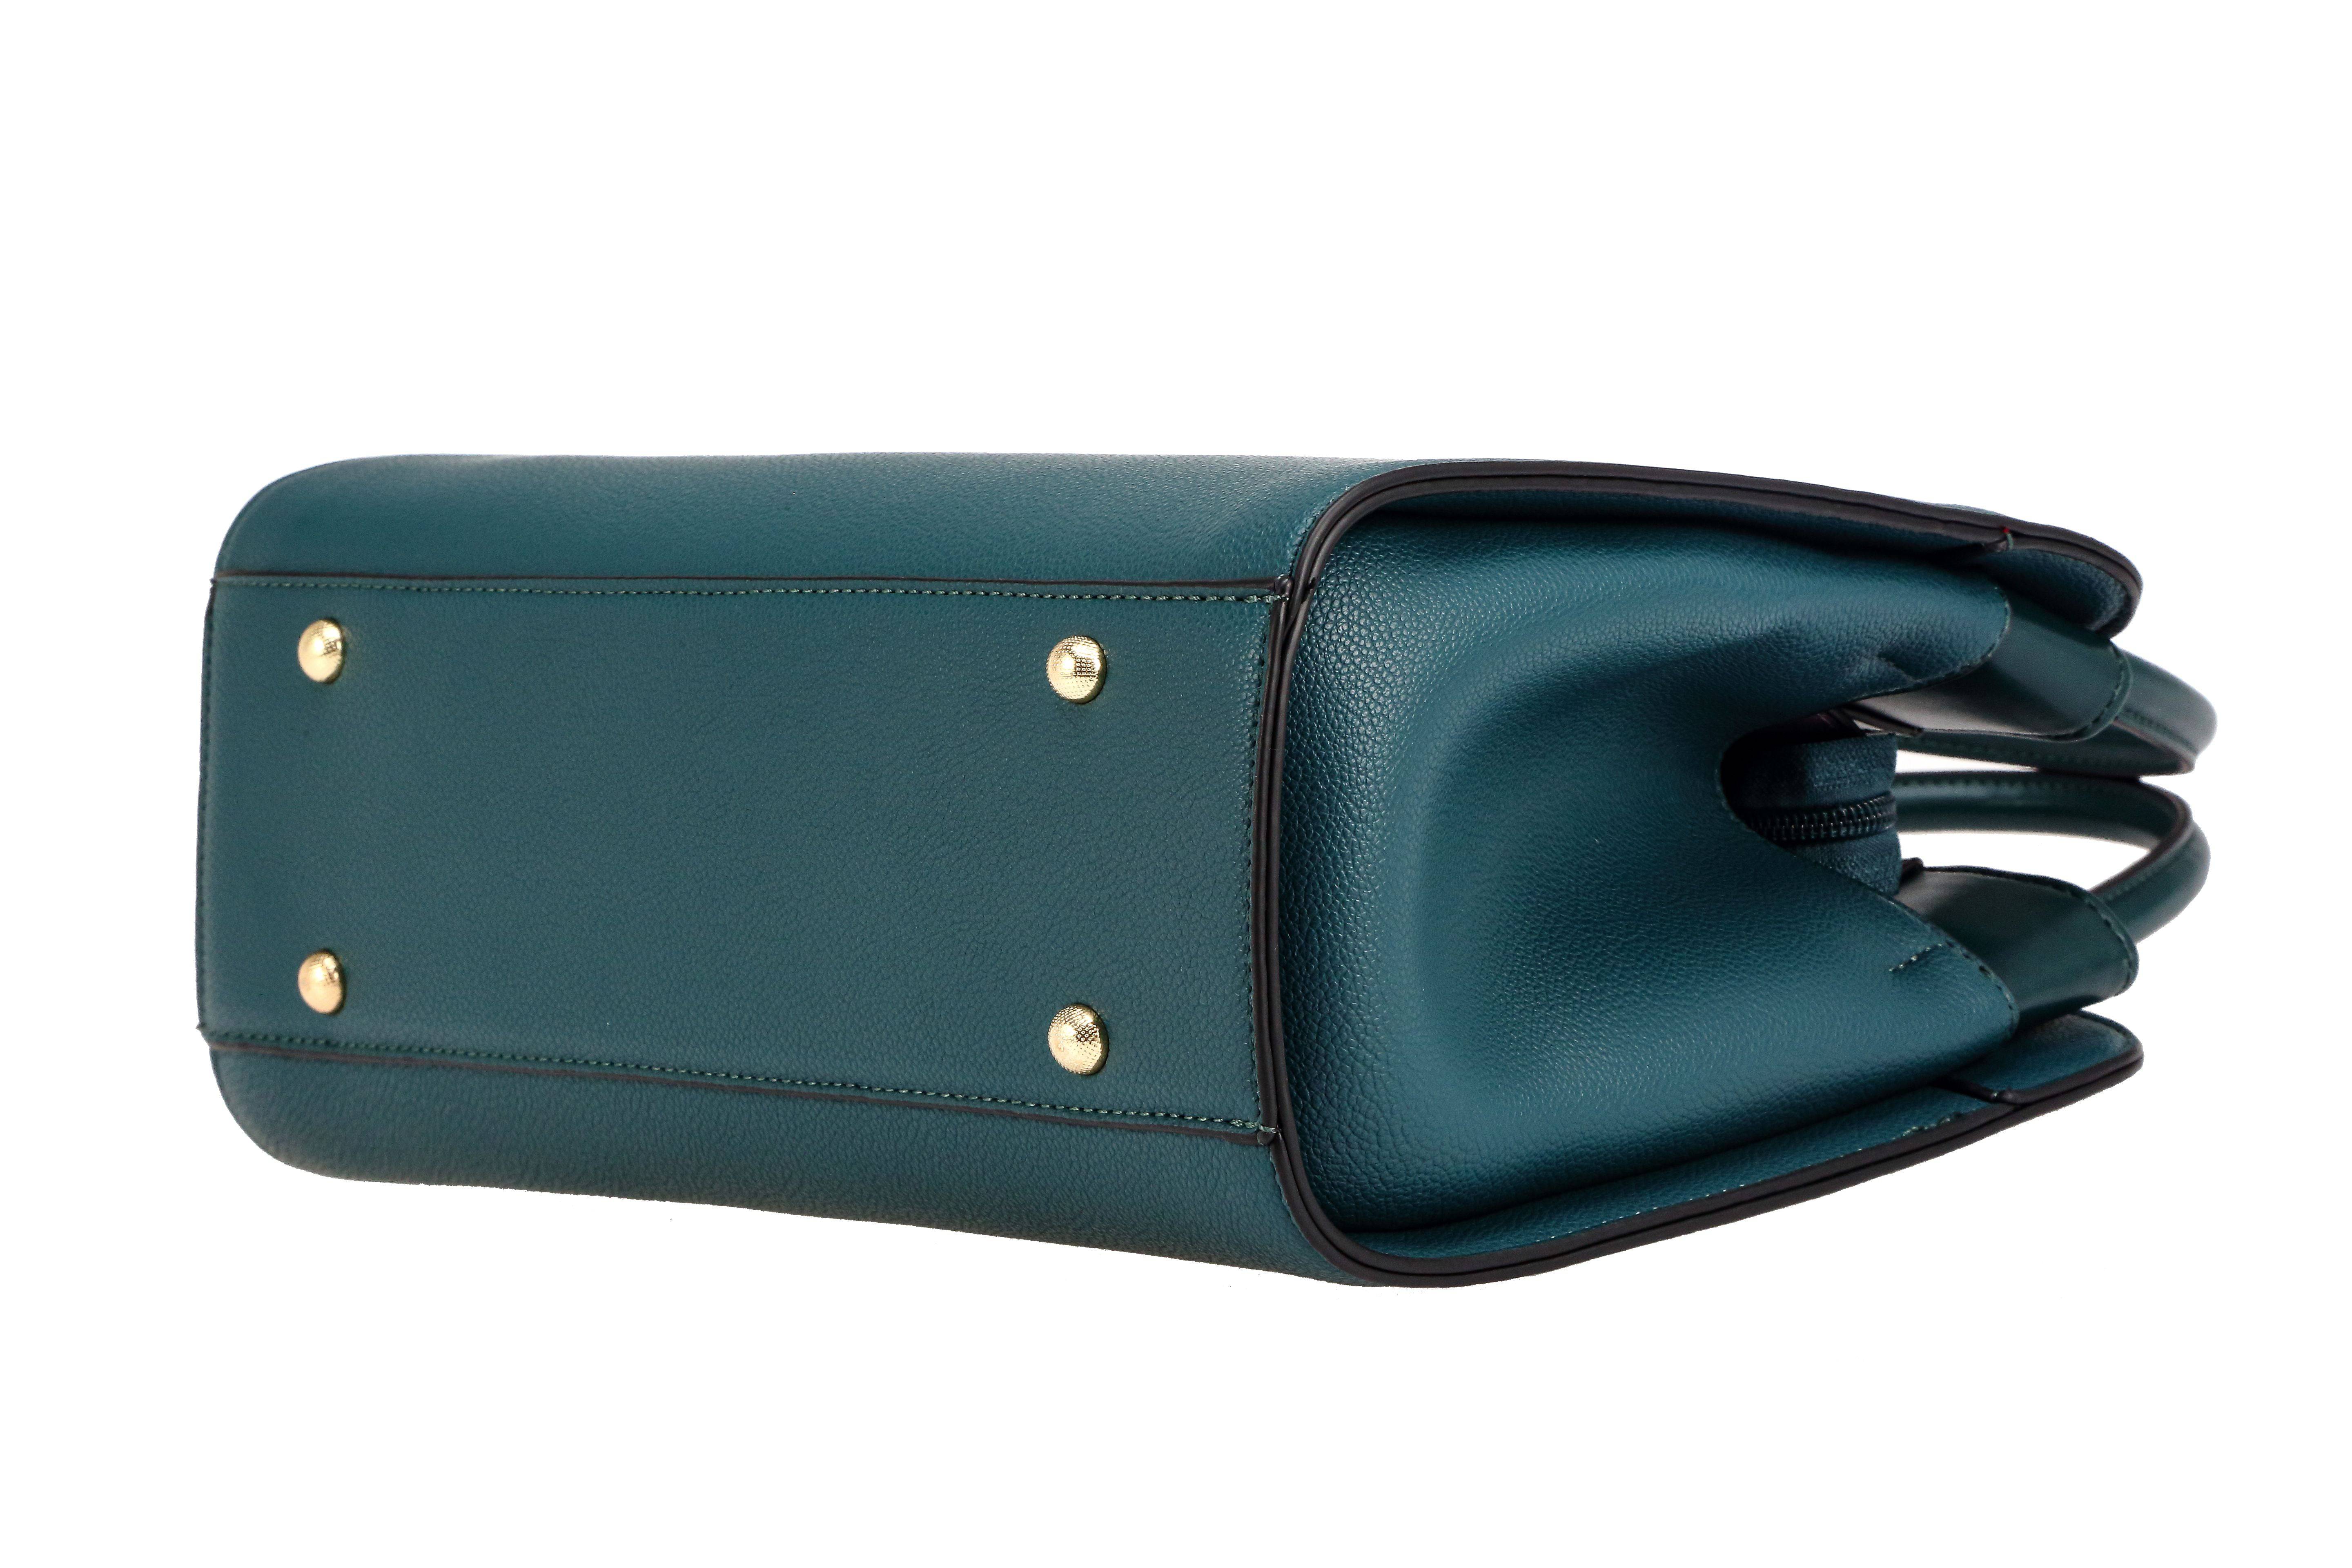 حقيبة يد نسائية باللون الازرق الغامق متوسطة الحجم بيد مريحة وبملمس وتصميم مميز. - KSA